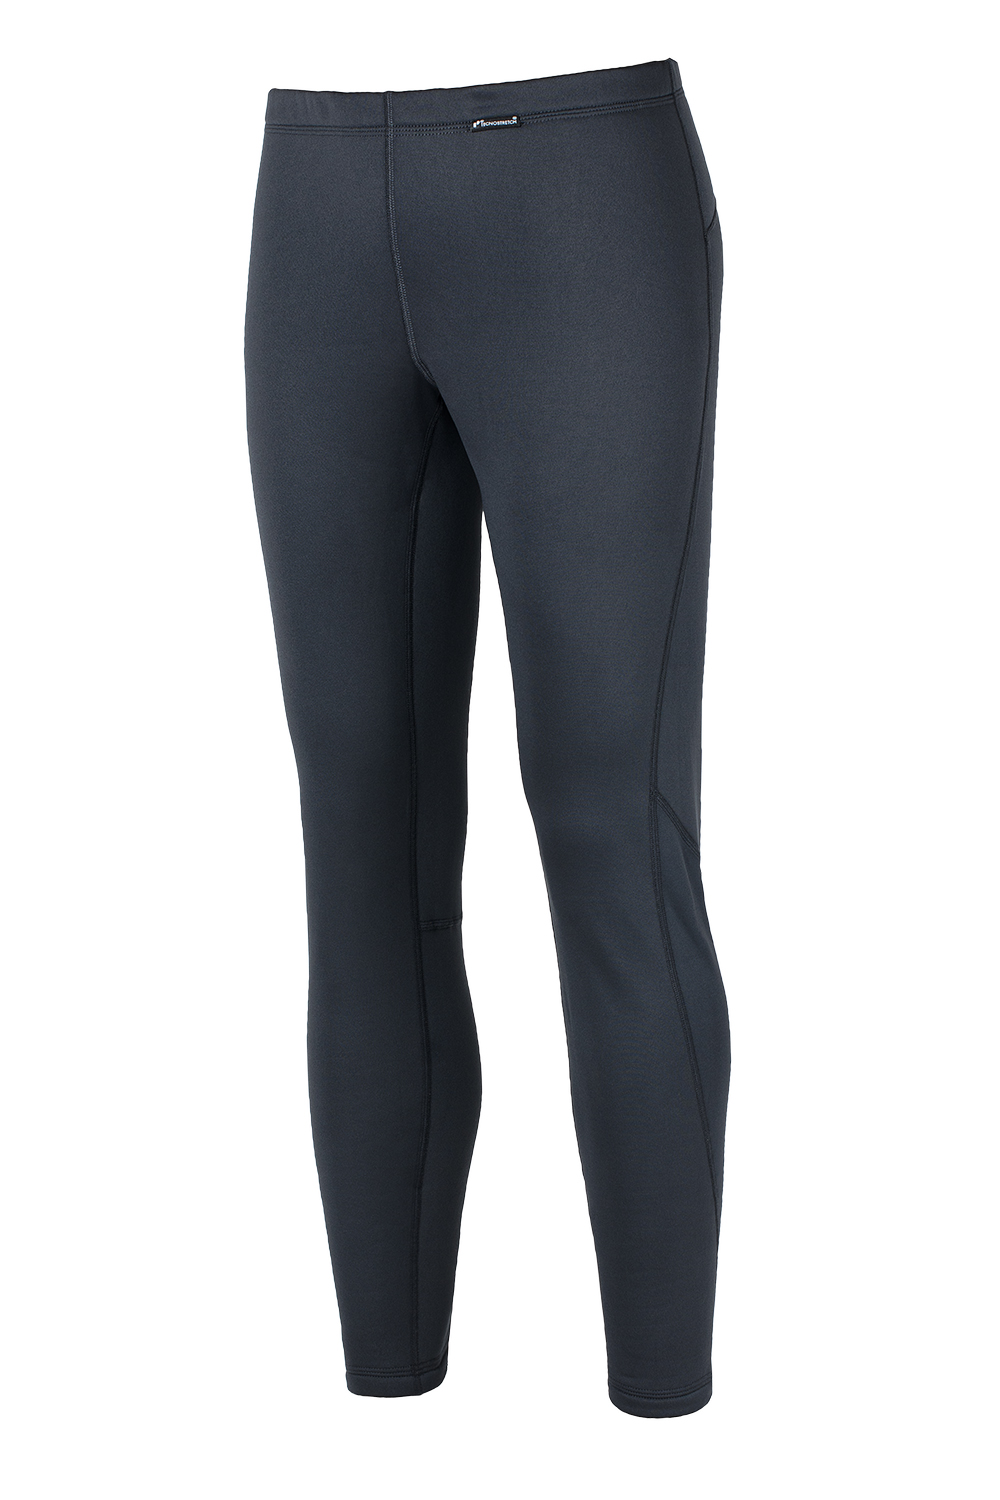 Мягкие и теплые брюки термобелье Draft купить в магазине спортивной одежды O3 Ozone